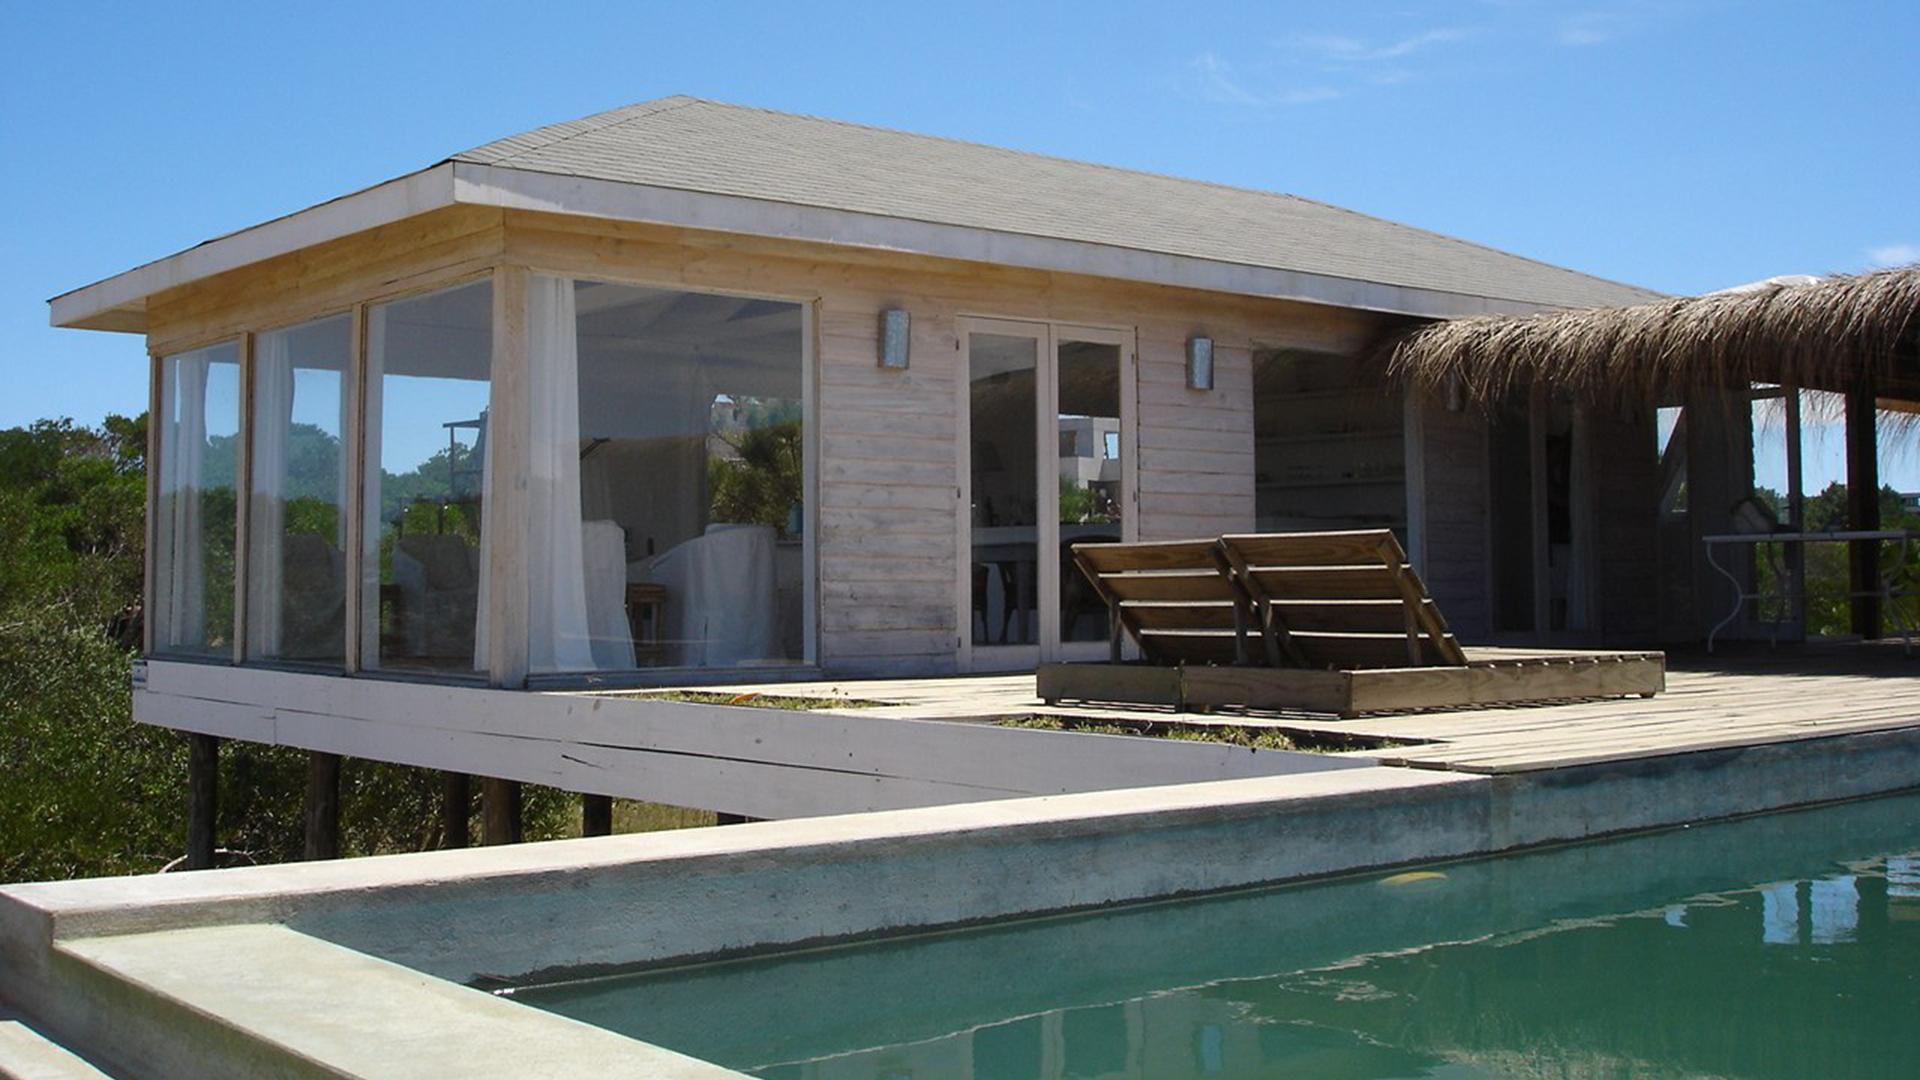 Cabin-Style Villa with Ocean View located in Jose Ignacio, Punta del Este, Uruguay, listed by Curiocity Villas.